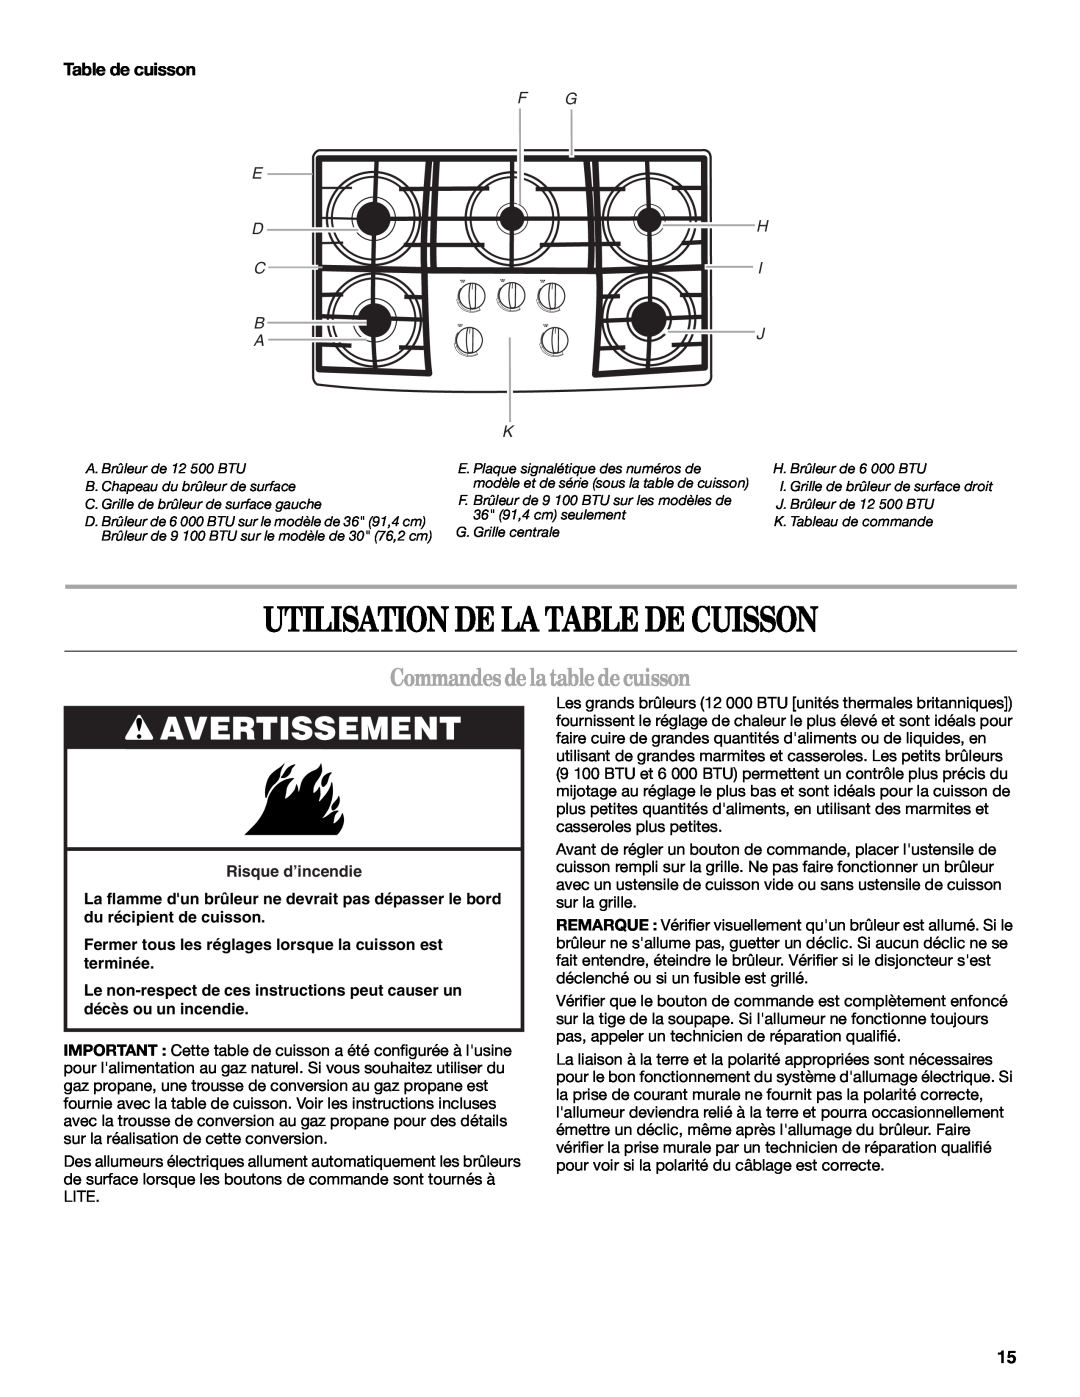 Whirlpool GLT3057 manual Utilisation De La Table De Cuisson, Avertissement, Commandesdelatabledecuisson, Table de cuisson 